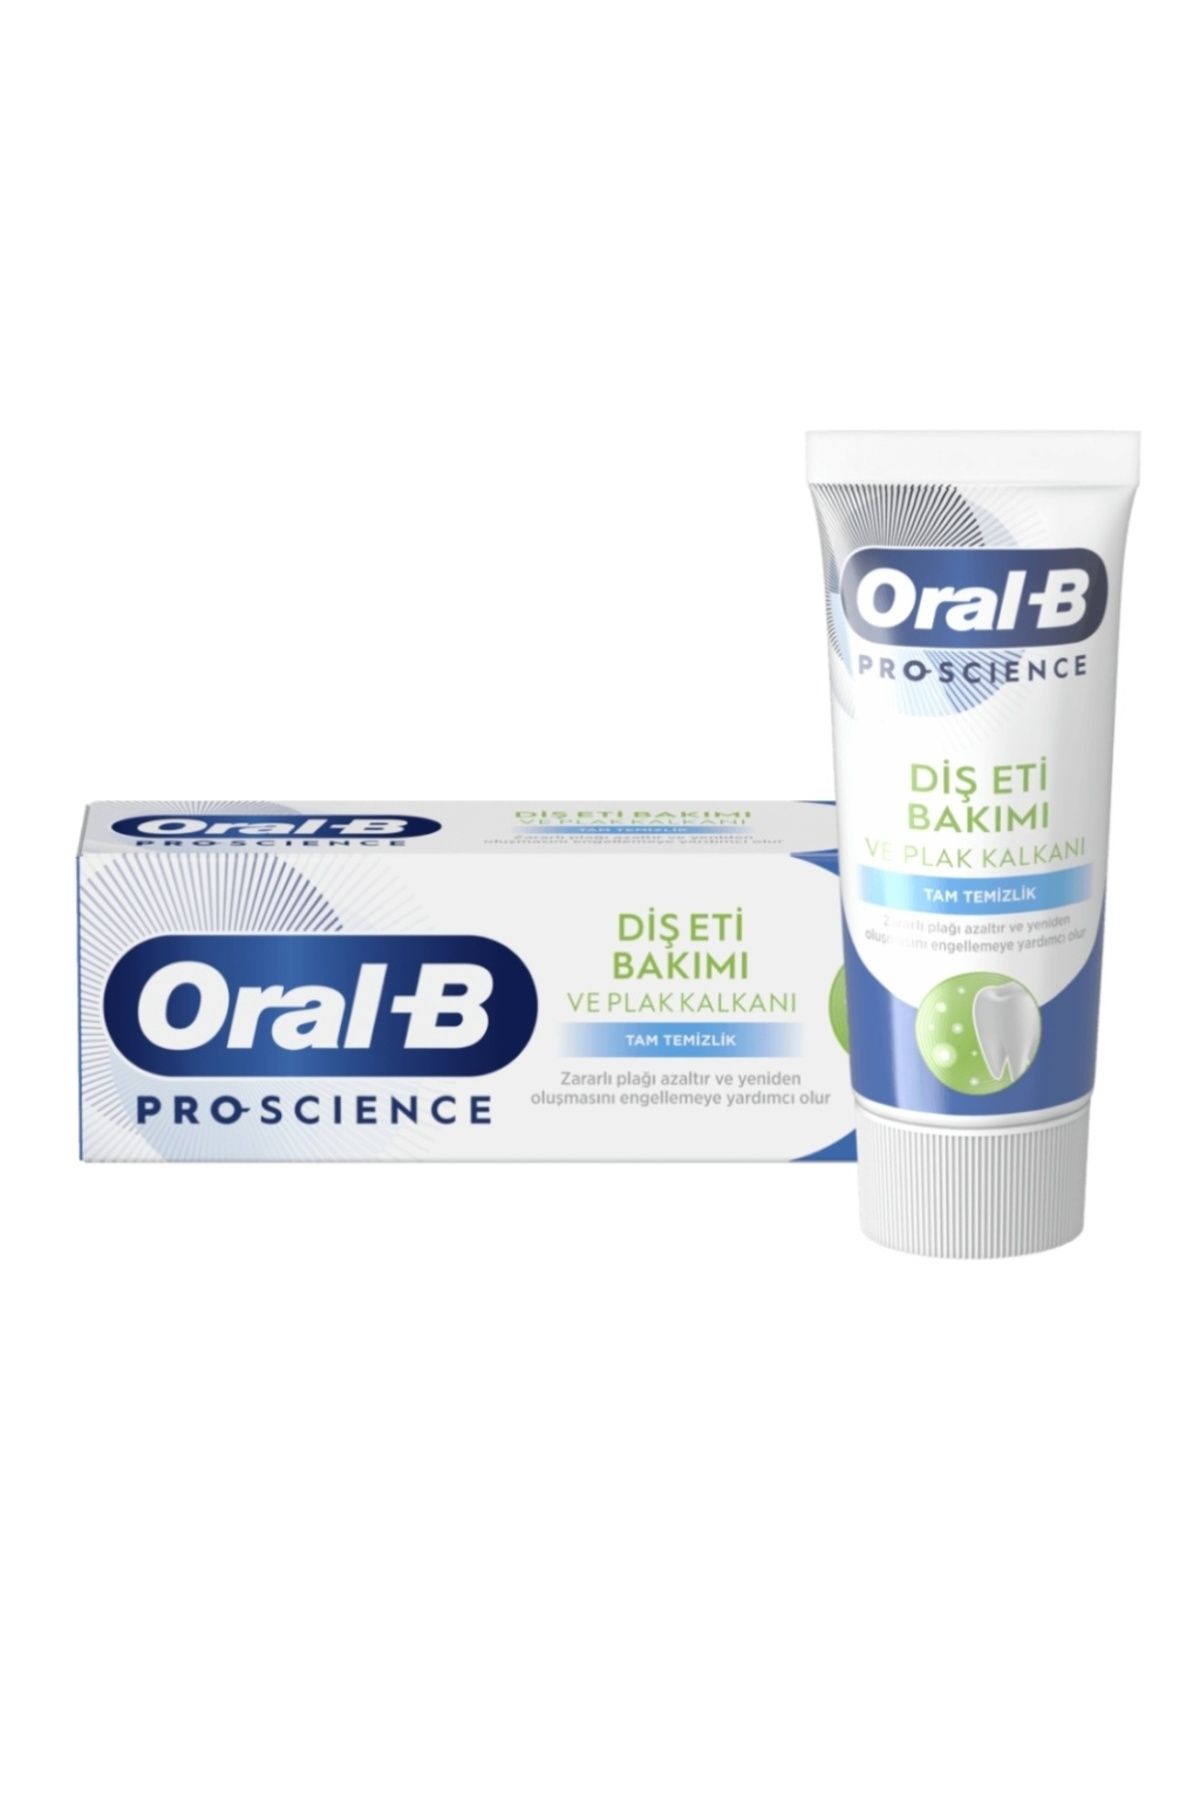 Oral-B Pro Science Tam Temizlik Diş Eti Bakımı Diş Macunu 50 ml